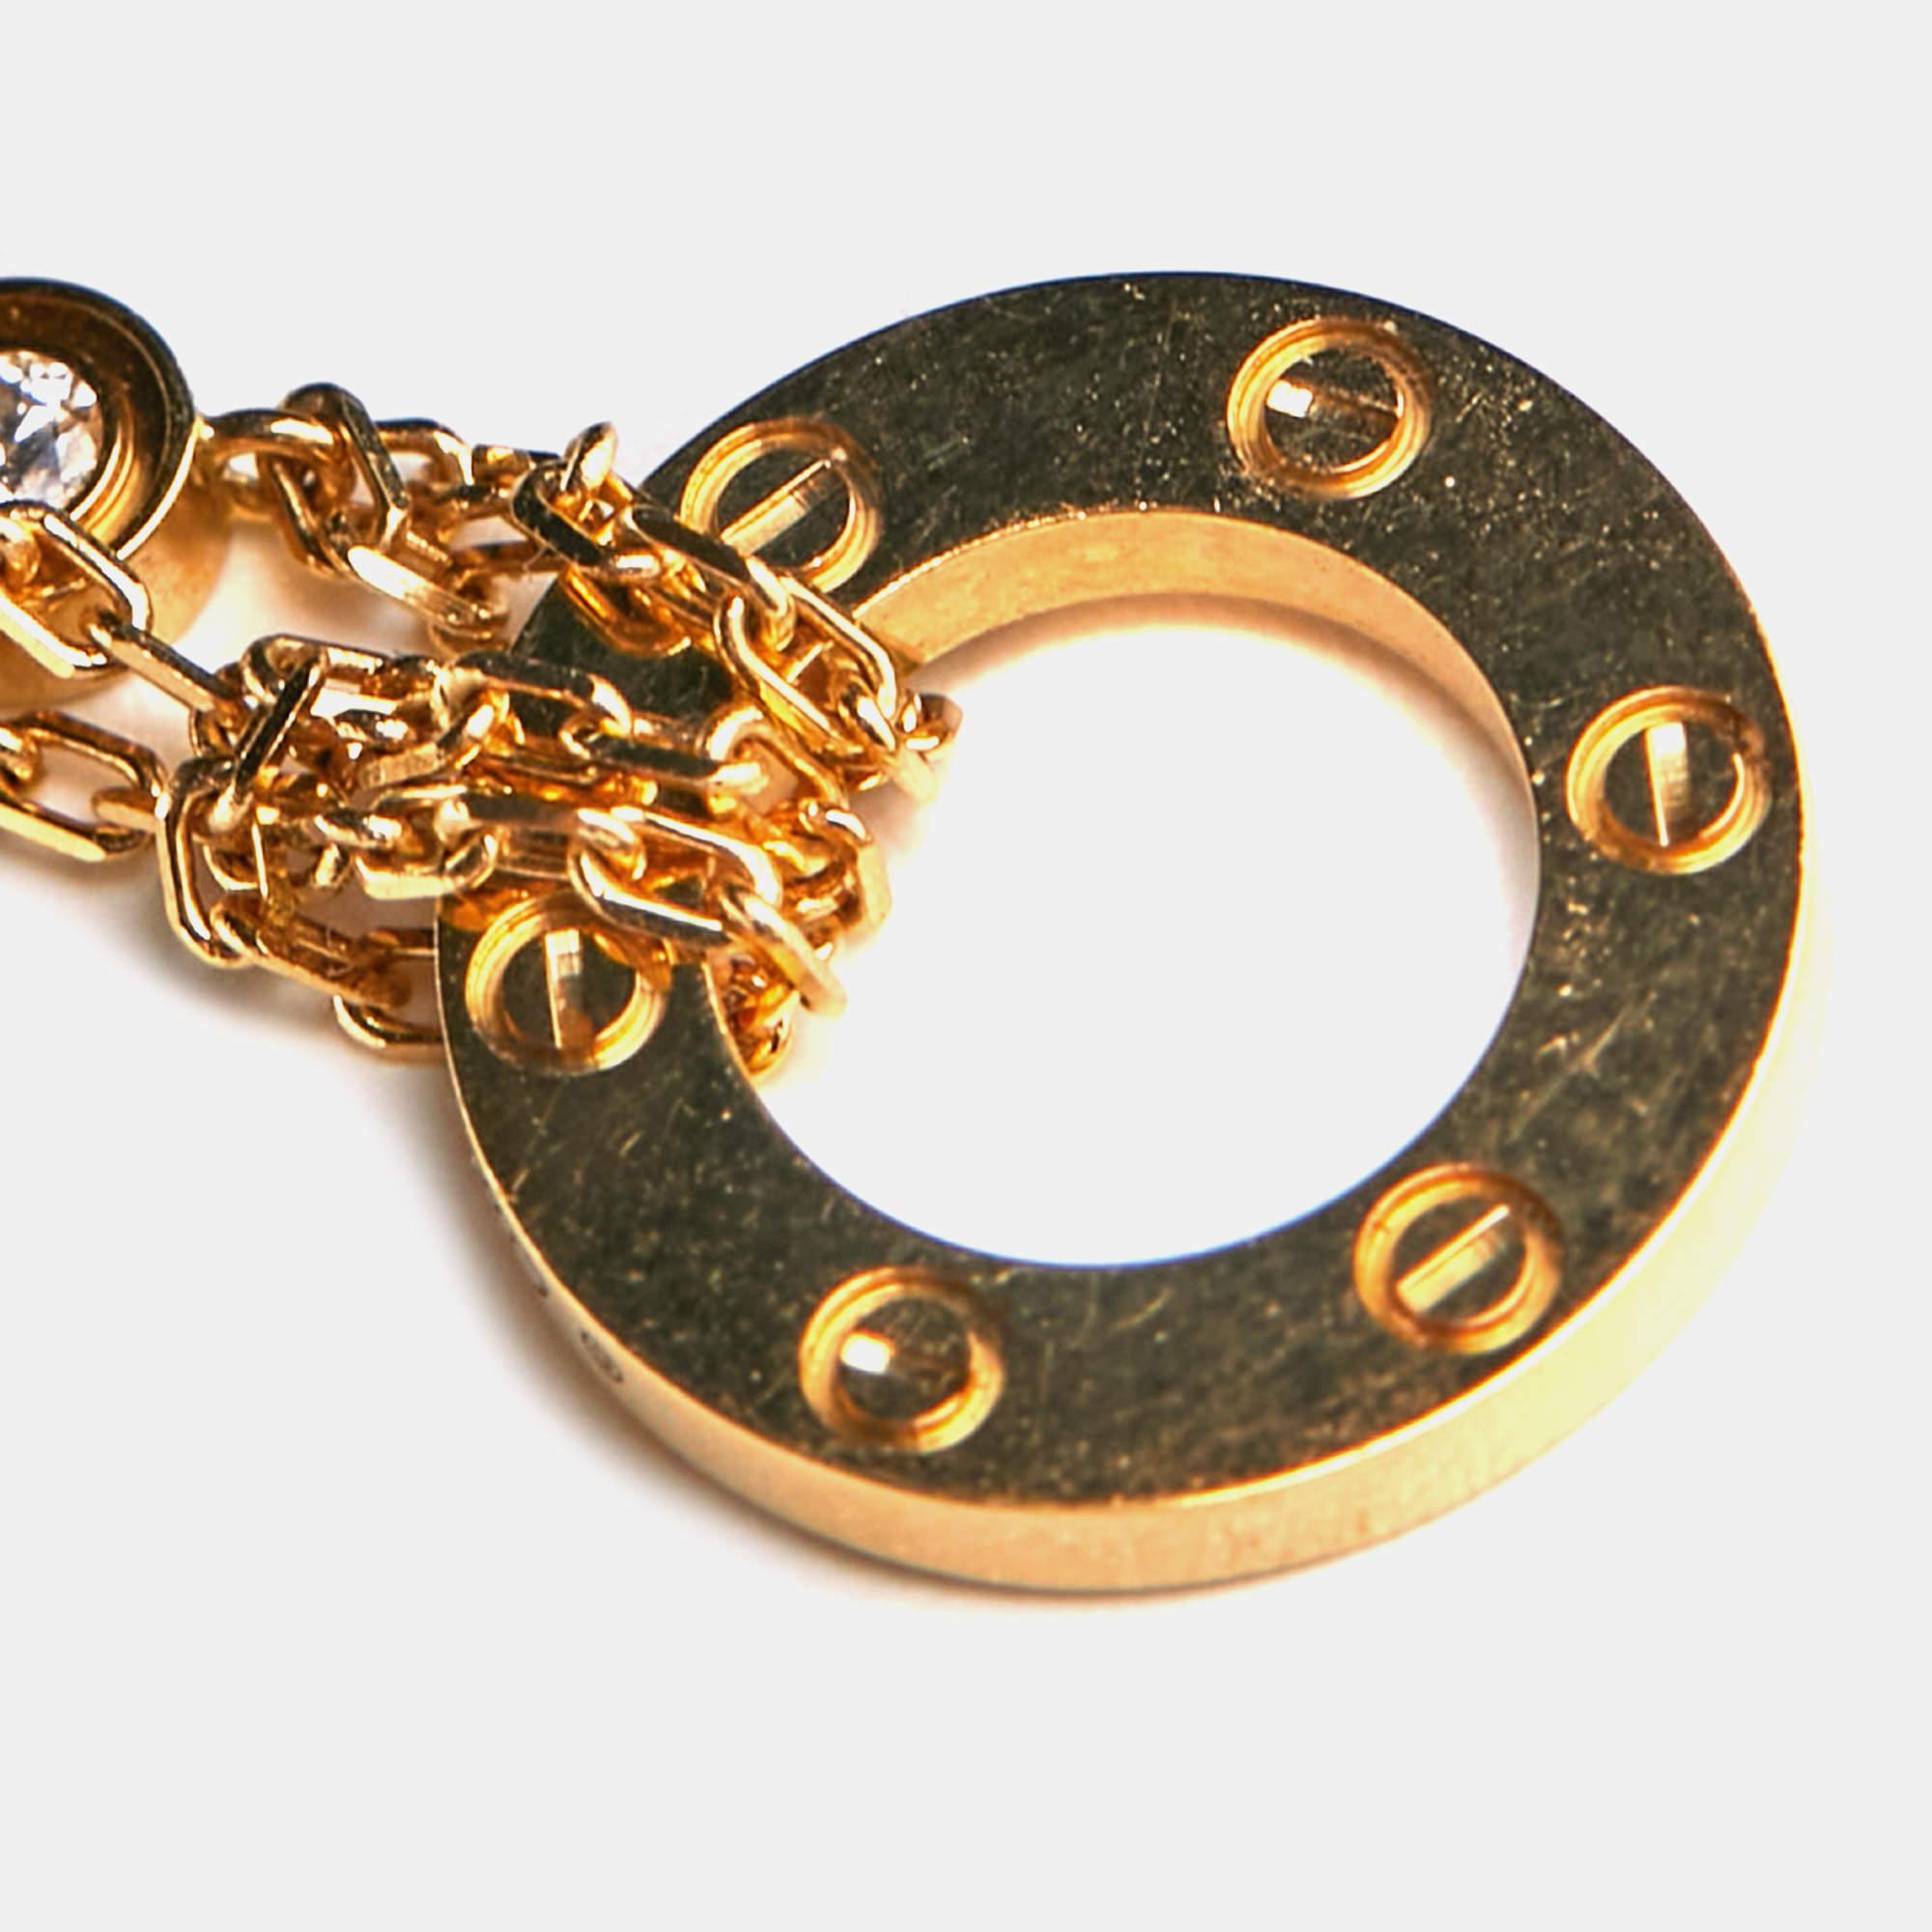 Dieses Love-Armband ist ein Beweis für die wunderbare Handwerkskunst und die sorgfältige Arbeit, die in der Herstellung eines Cartier-Wunders steckt! Sie ist aus 18 Karat Gelbgold gefertigt und zeigt die ikonischen Schraubenmotive und Diamanten.

